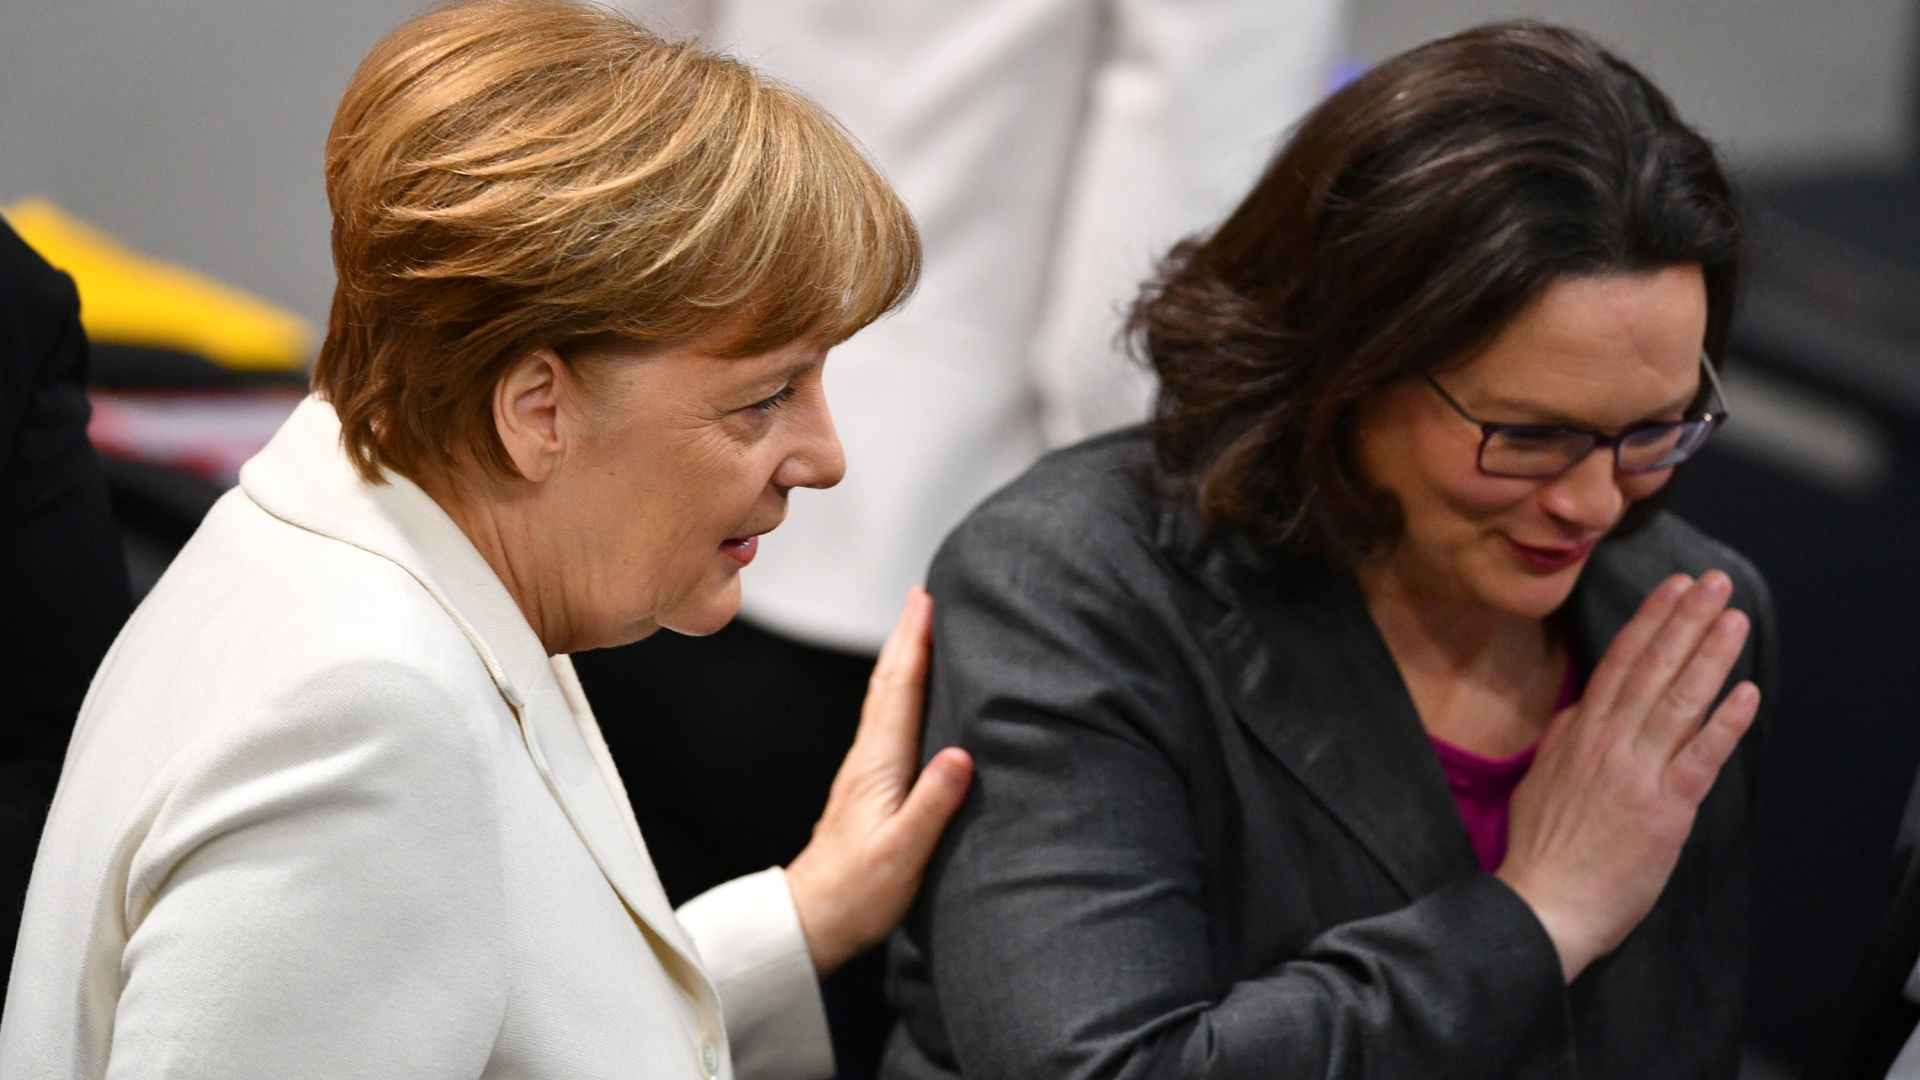 Kanzlerin Angela Merkel legt der SPD-Fraktionsvorsitzenden Andrea Nahles im Bundestag die Hand auf die Schulter. | Bildquelle: dpa